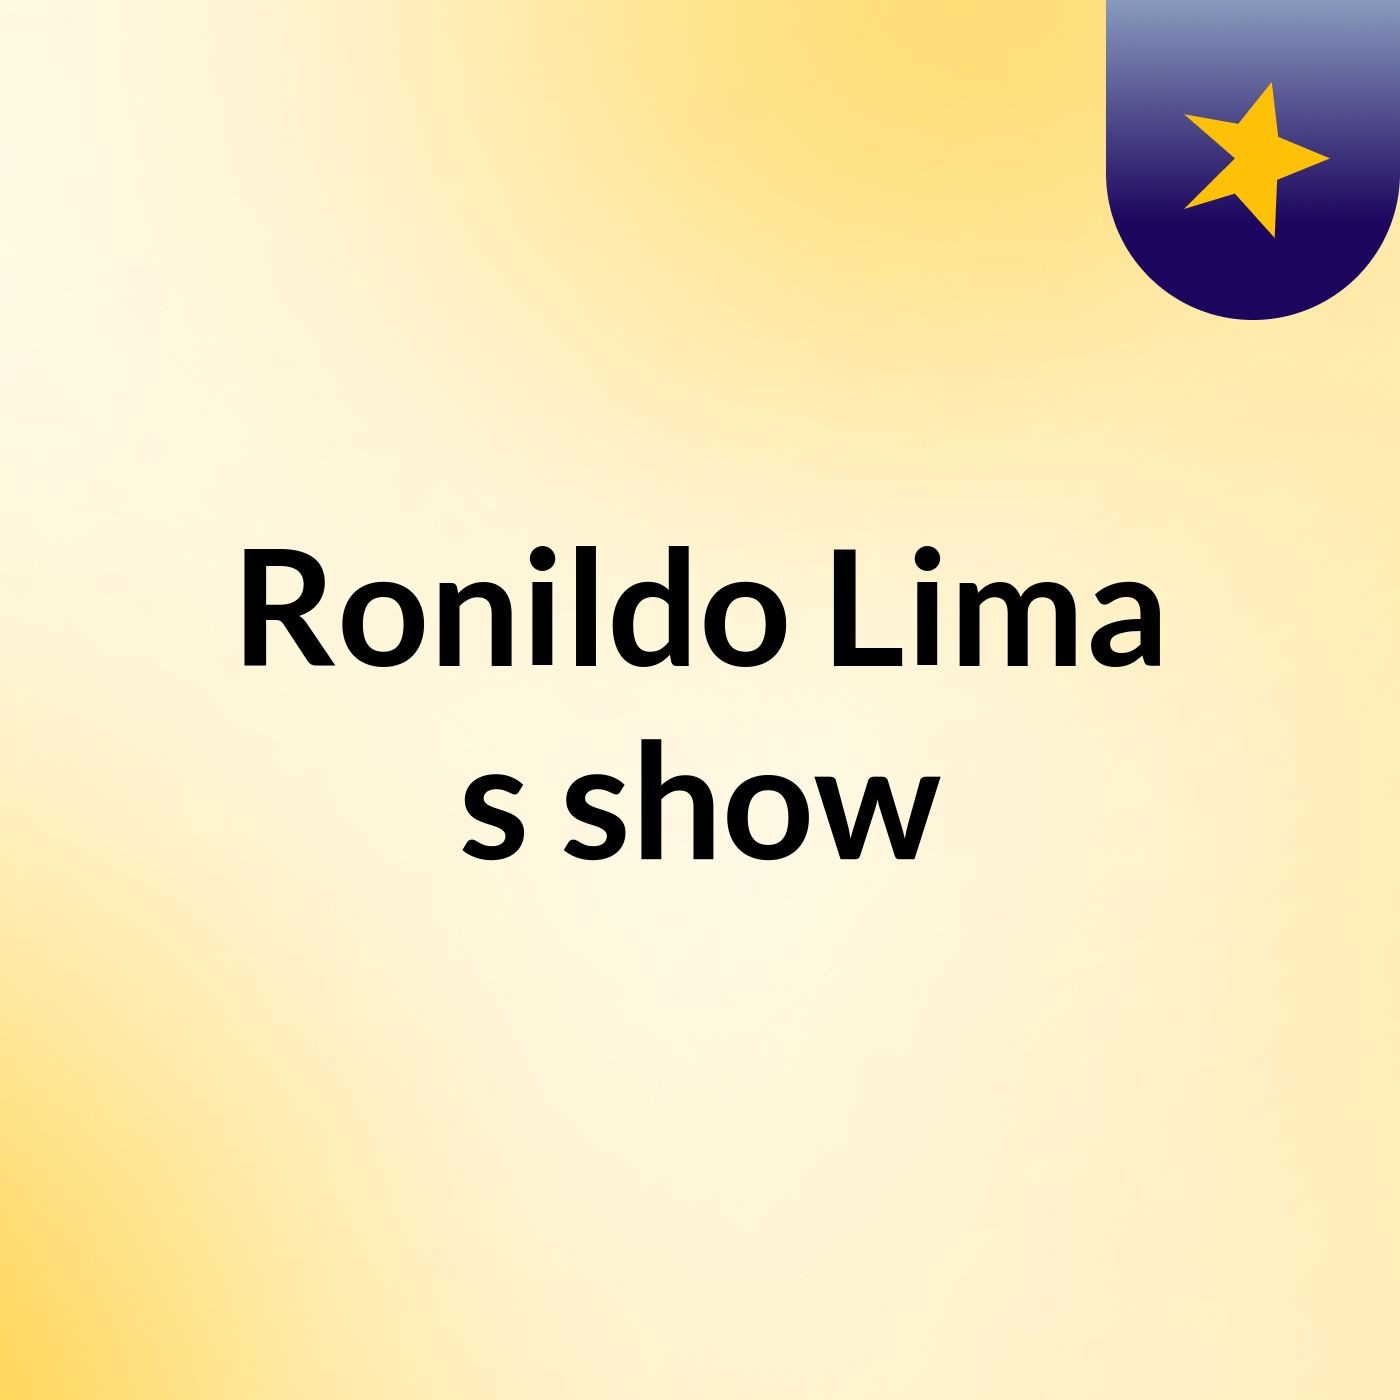 Ronildo Lima's show